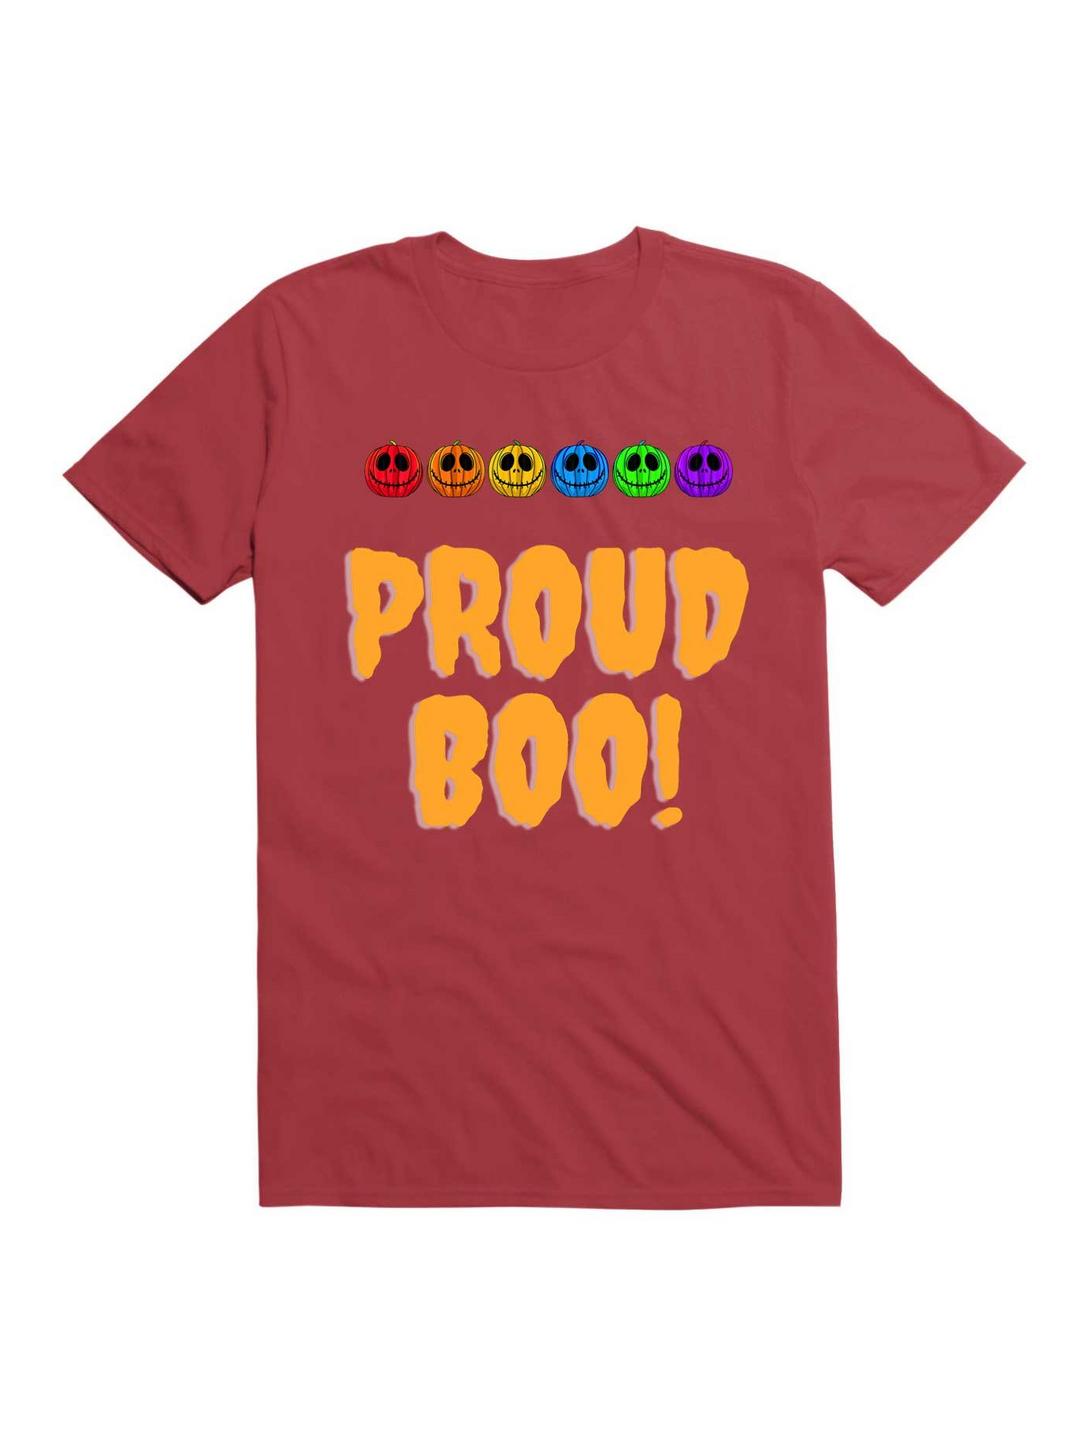 Proud Boo! T-Shirt, , hi-res